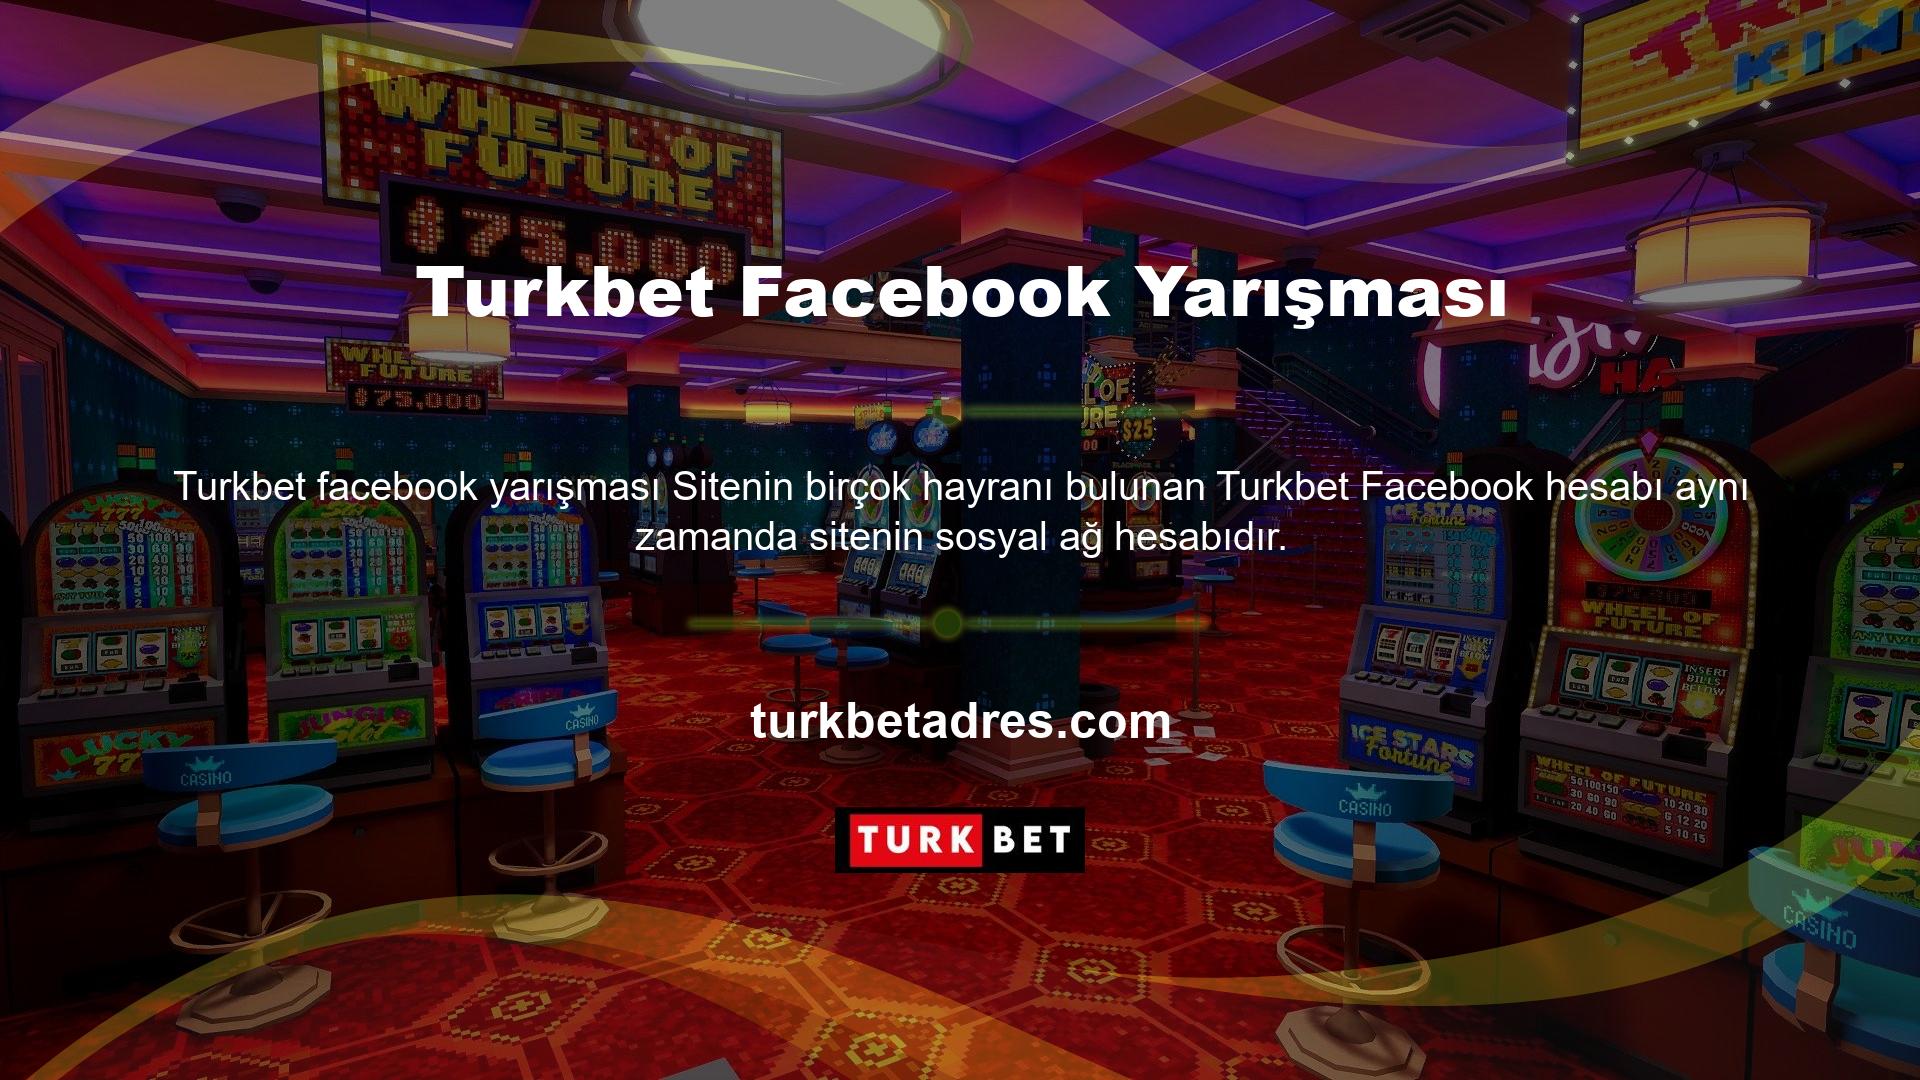 Bu hesabı aktif olarak kullanmak için ilk olarak bu hesap tarafından bir Turkbet sosyal medya yarışması düzenlenmiştir